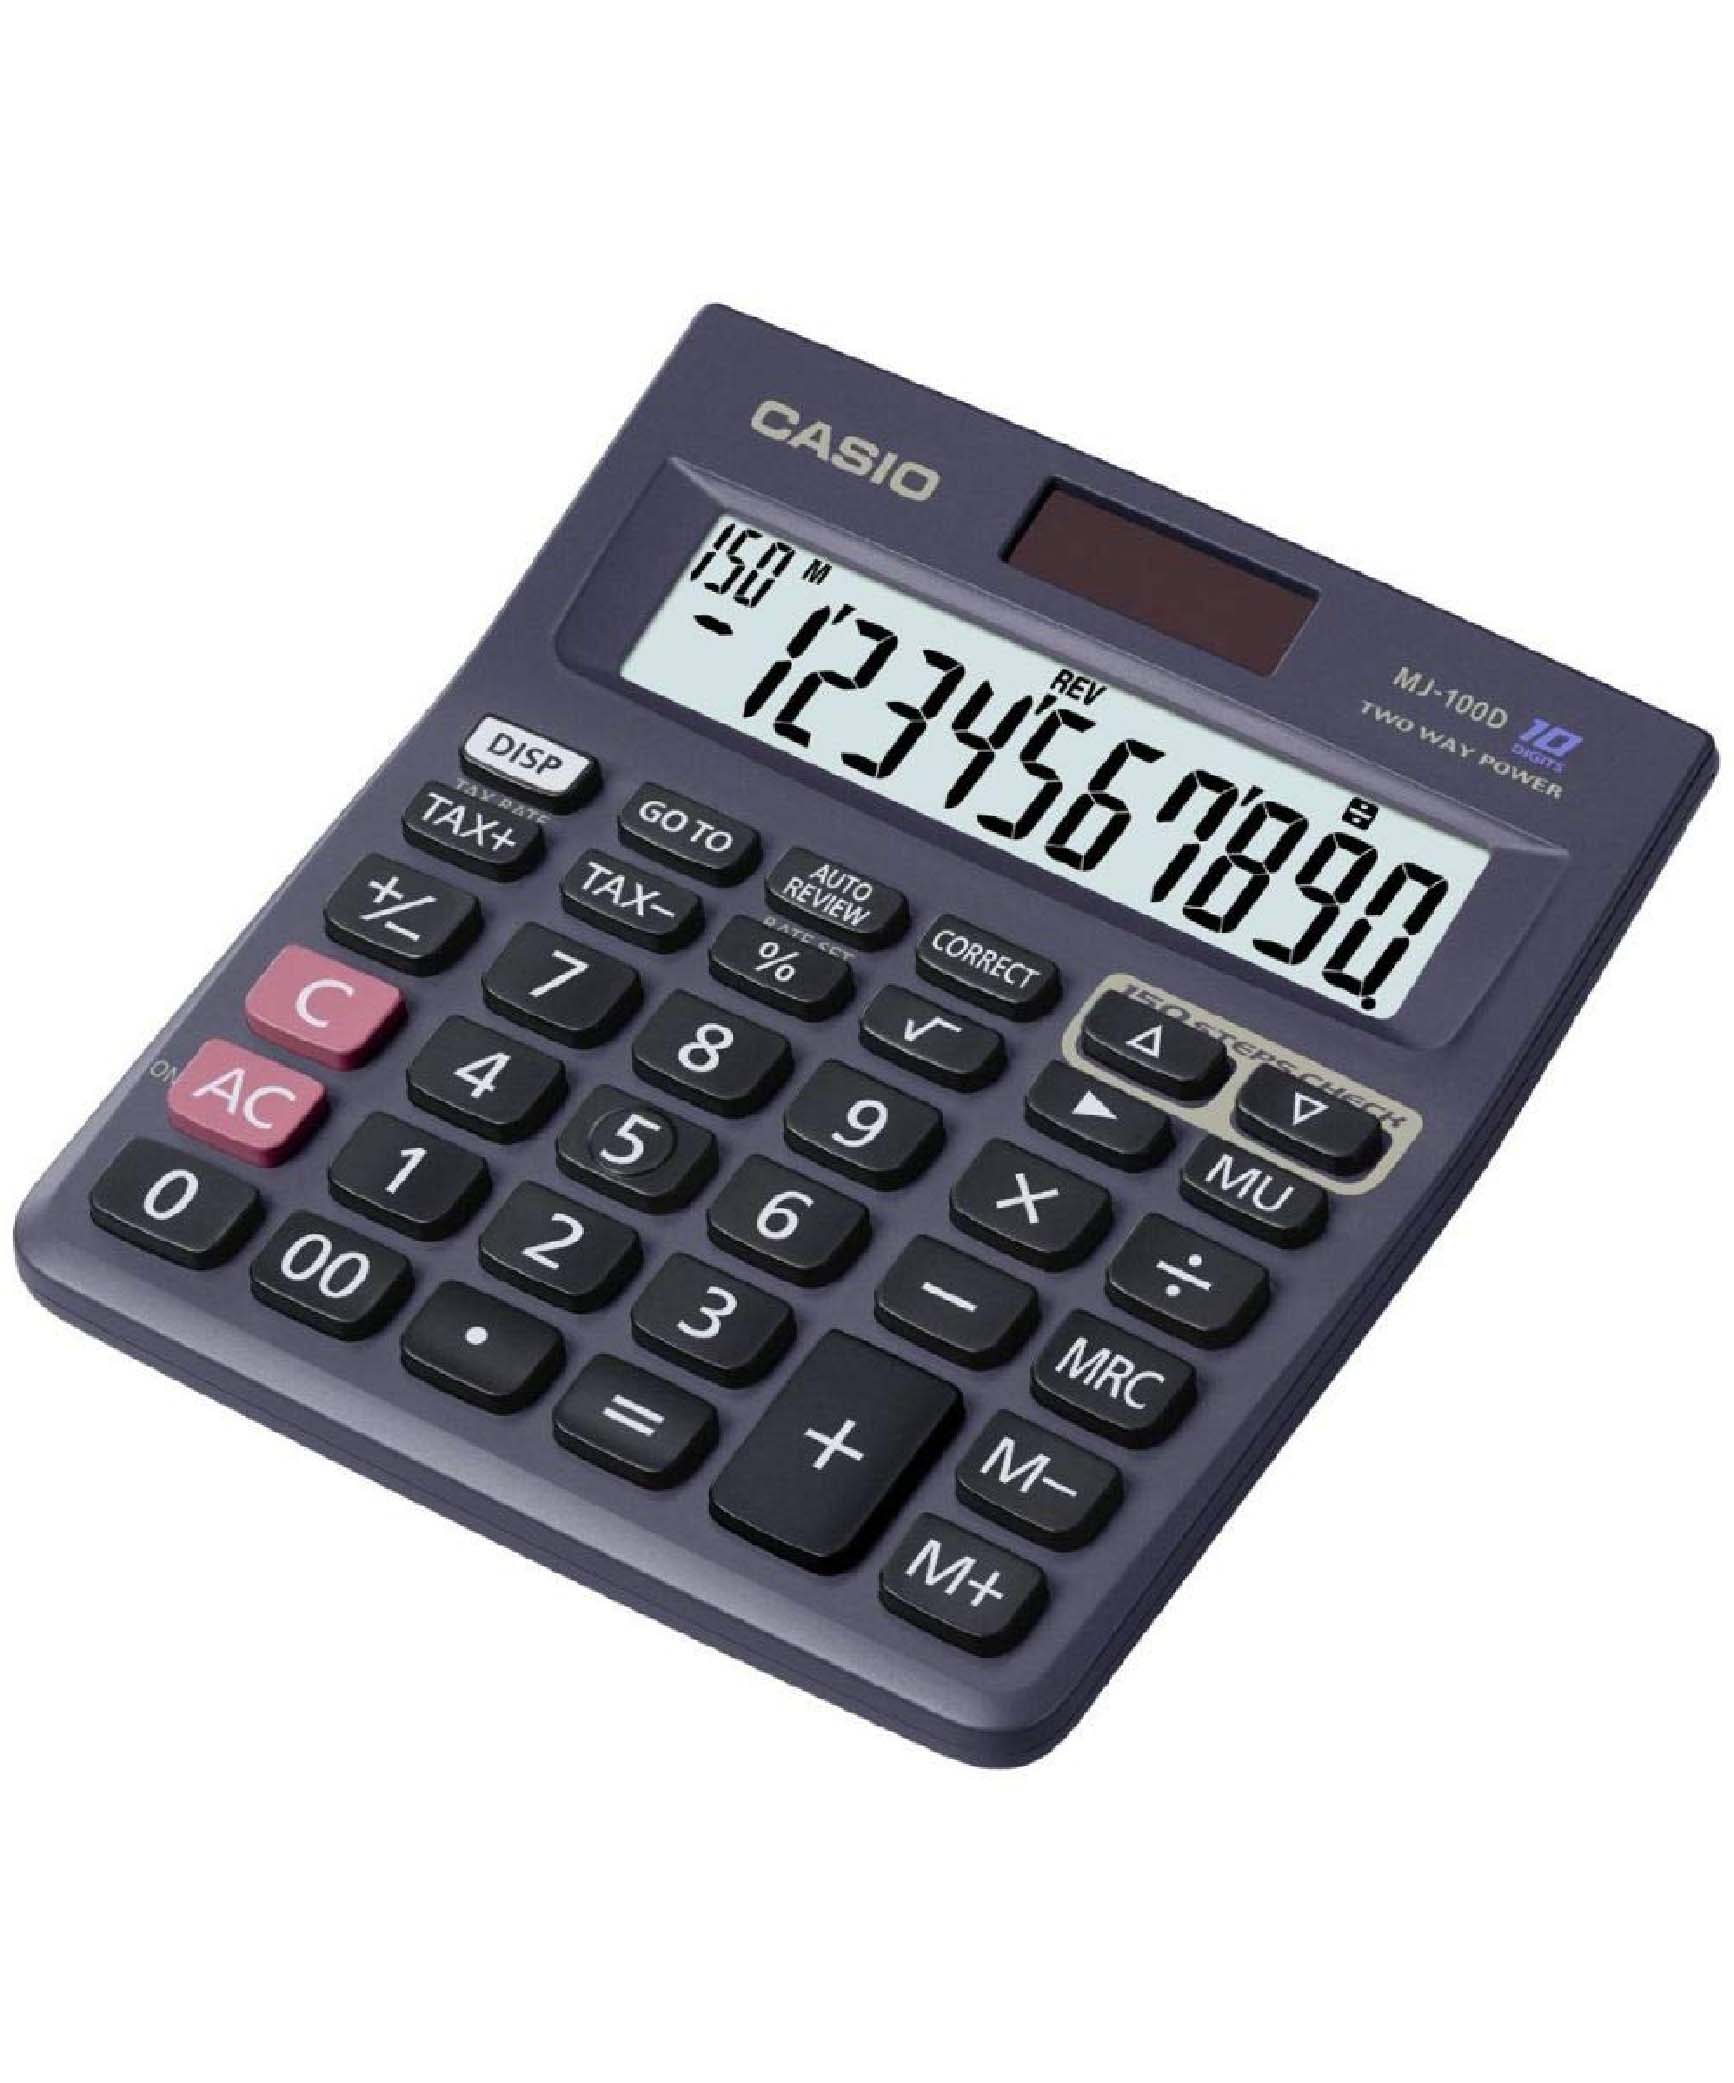 Casio Practical Calculator, MJ100 